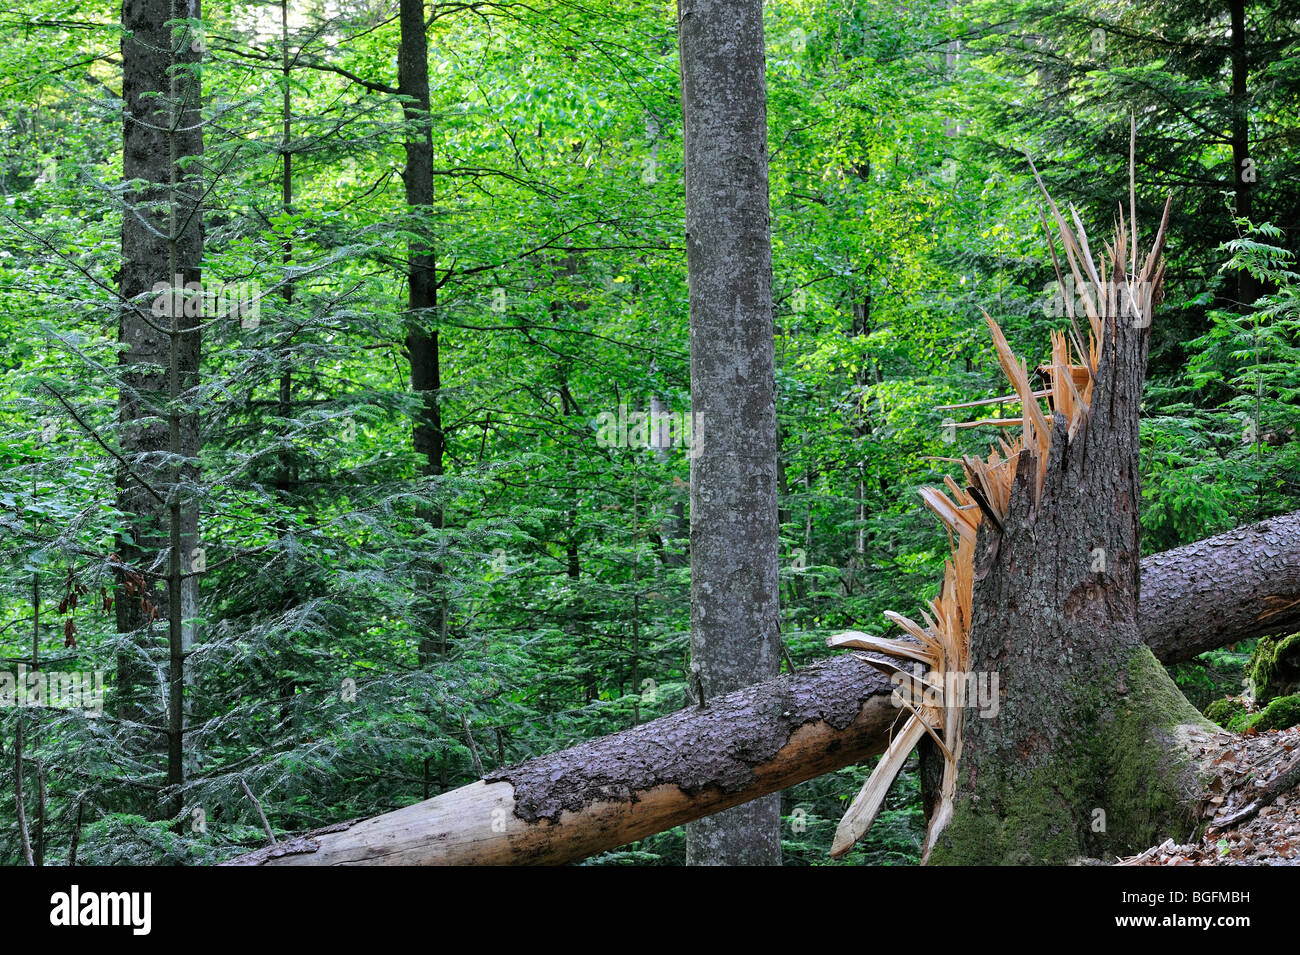 Les troncs d'arbres brisés, les dégâts causés par les tempêtes en forêt après le passage des ouragans, forêt de Bavière, Allemagne Banque D'Images